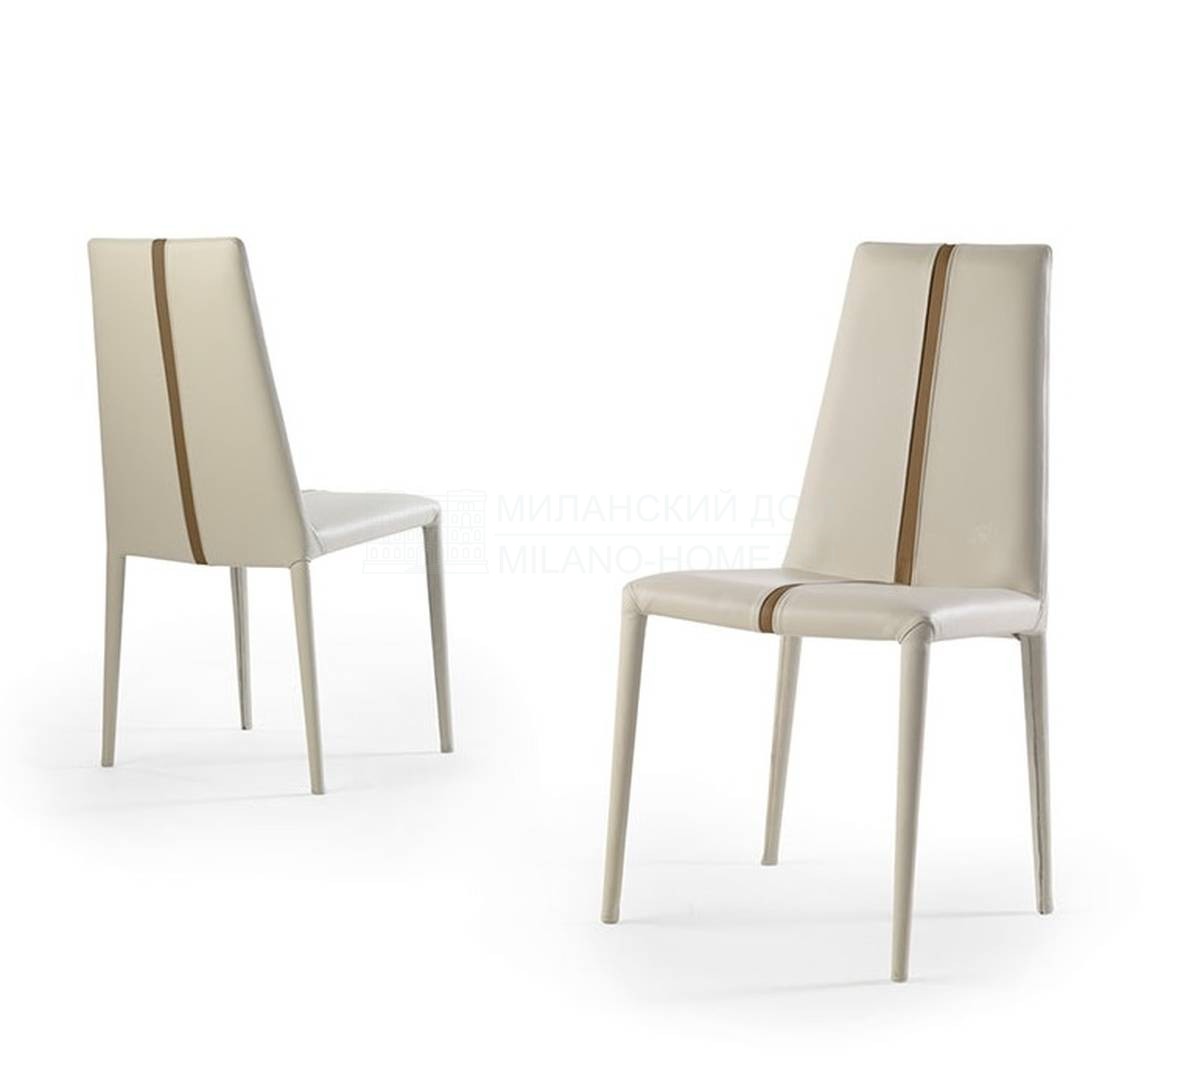 Кожаный стул Linea из Италии фабрики REFLEX ANGELO